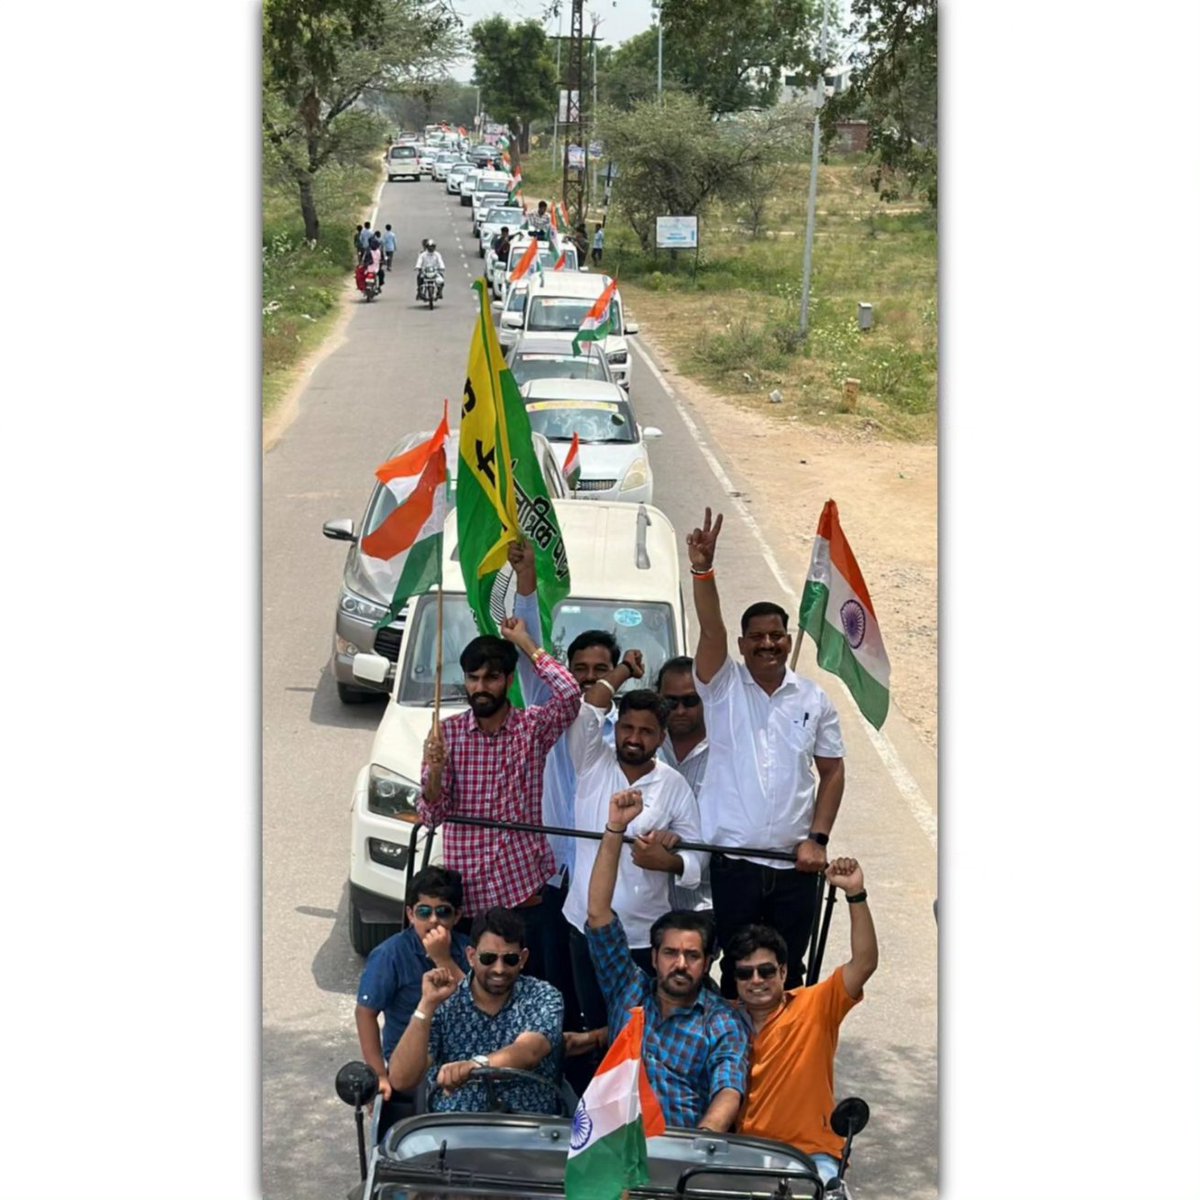 77 वें स्वतंत्रता दिवस के उपलक्ष्य में आज झोटवाड़ा विधानसभा में राष्ट्रीय लोकतांत्रिक पार्टी द्वारा वाहन तिंरगा रैली का आयोजन किया गया। साथ ही रैली में पधारे लोगों को रालोपा सदस्यता महाअभियान के तहत सदस्यता ग्रहण करवाई गई। इस दौरान रालोपा सदस्यता महाअभियान जयपुर संभाग संयोजक